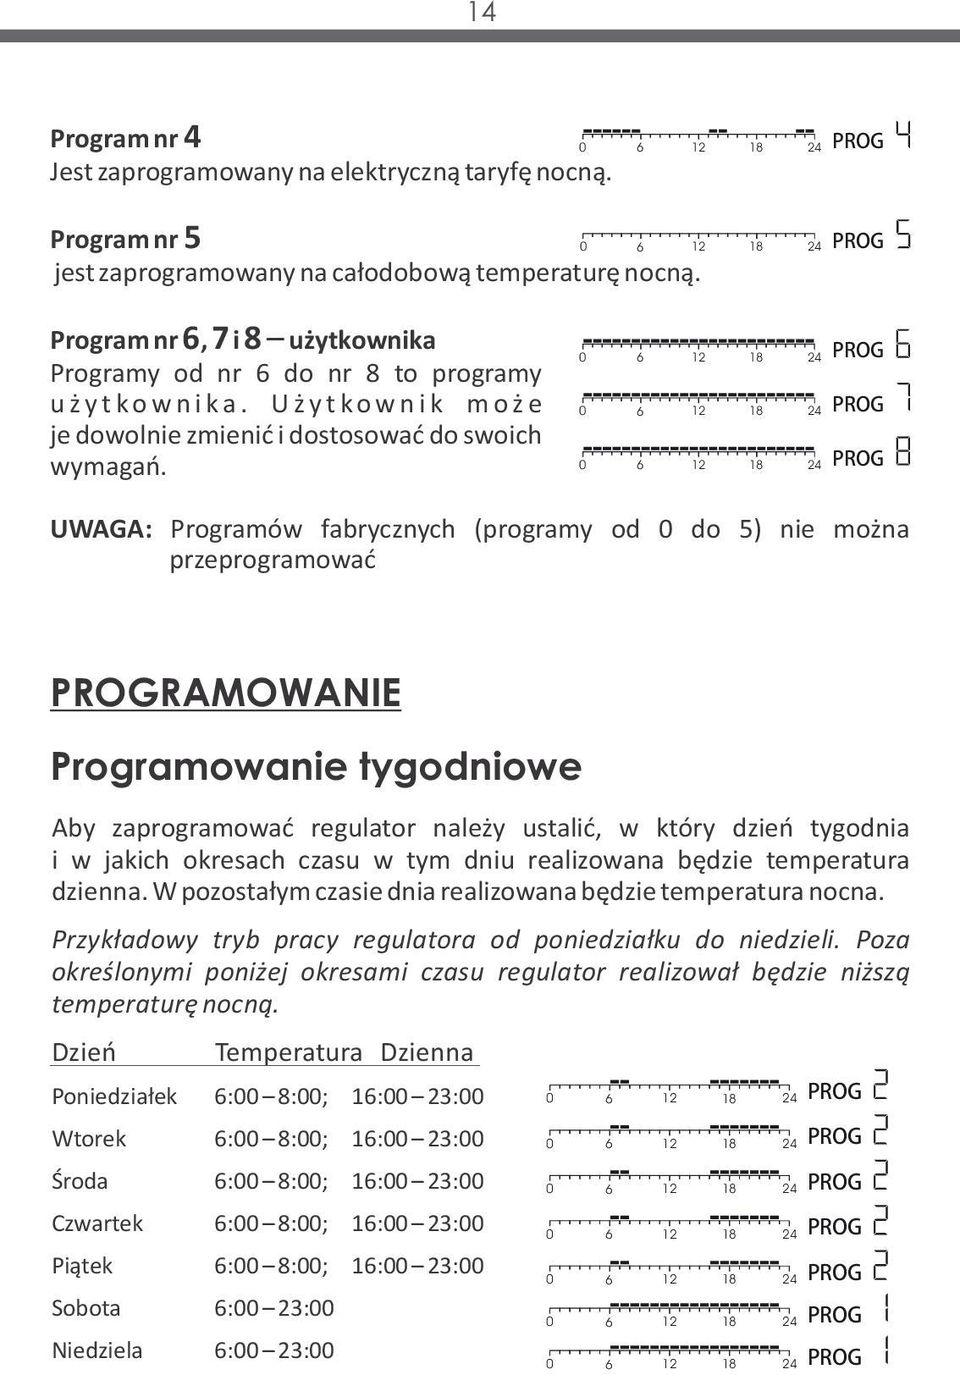 0 6 12 18 24 0 6 12 18 24 0 6 12 18 24 PROG PROG PROG UWAGA: Programów fabrycznych (programy od 0 do 5) nie można przeprogramować PROGRAMOWANIE Programowanie tygodniowe Aby zaprogramować regulator